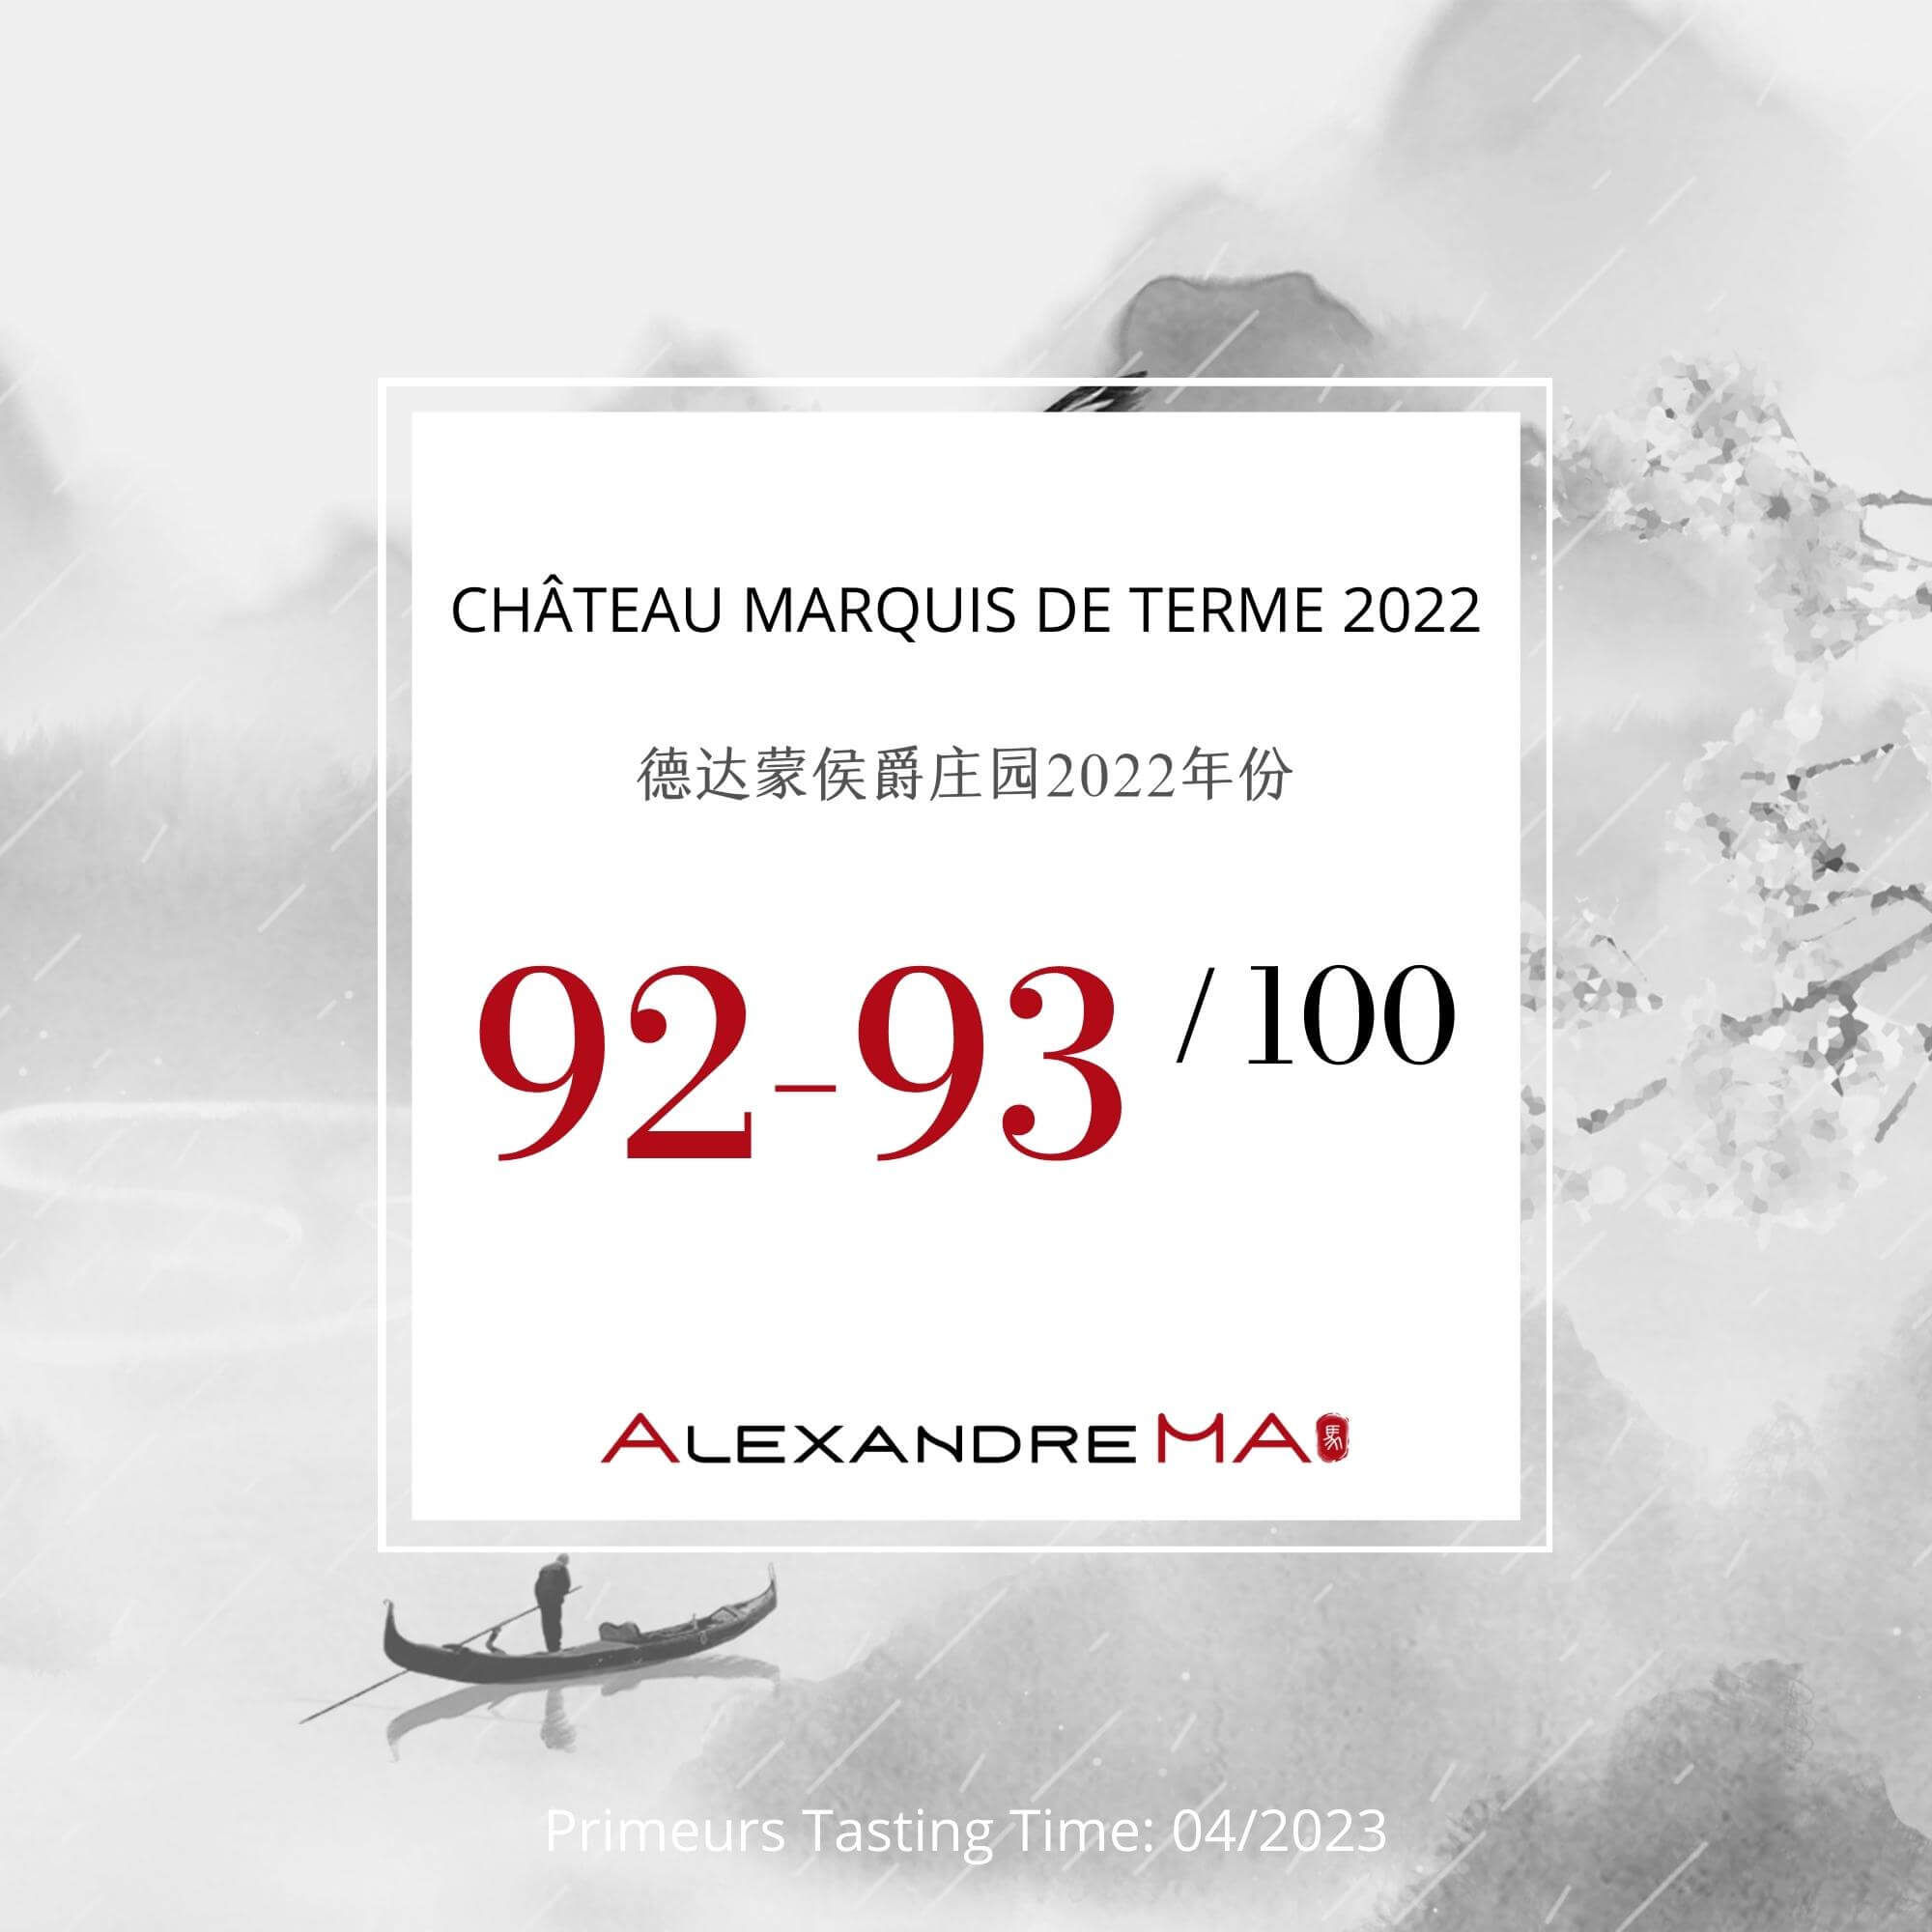 Château Marquis de Terme 2022 Primeurs - Alexandre MA